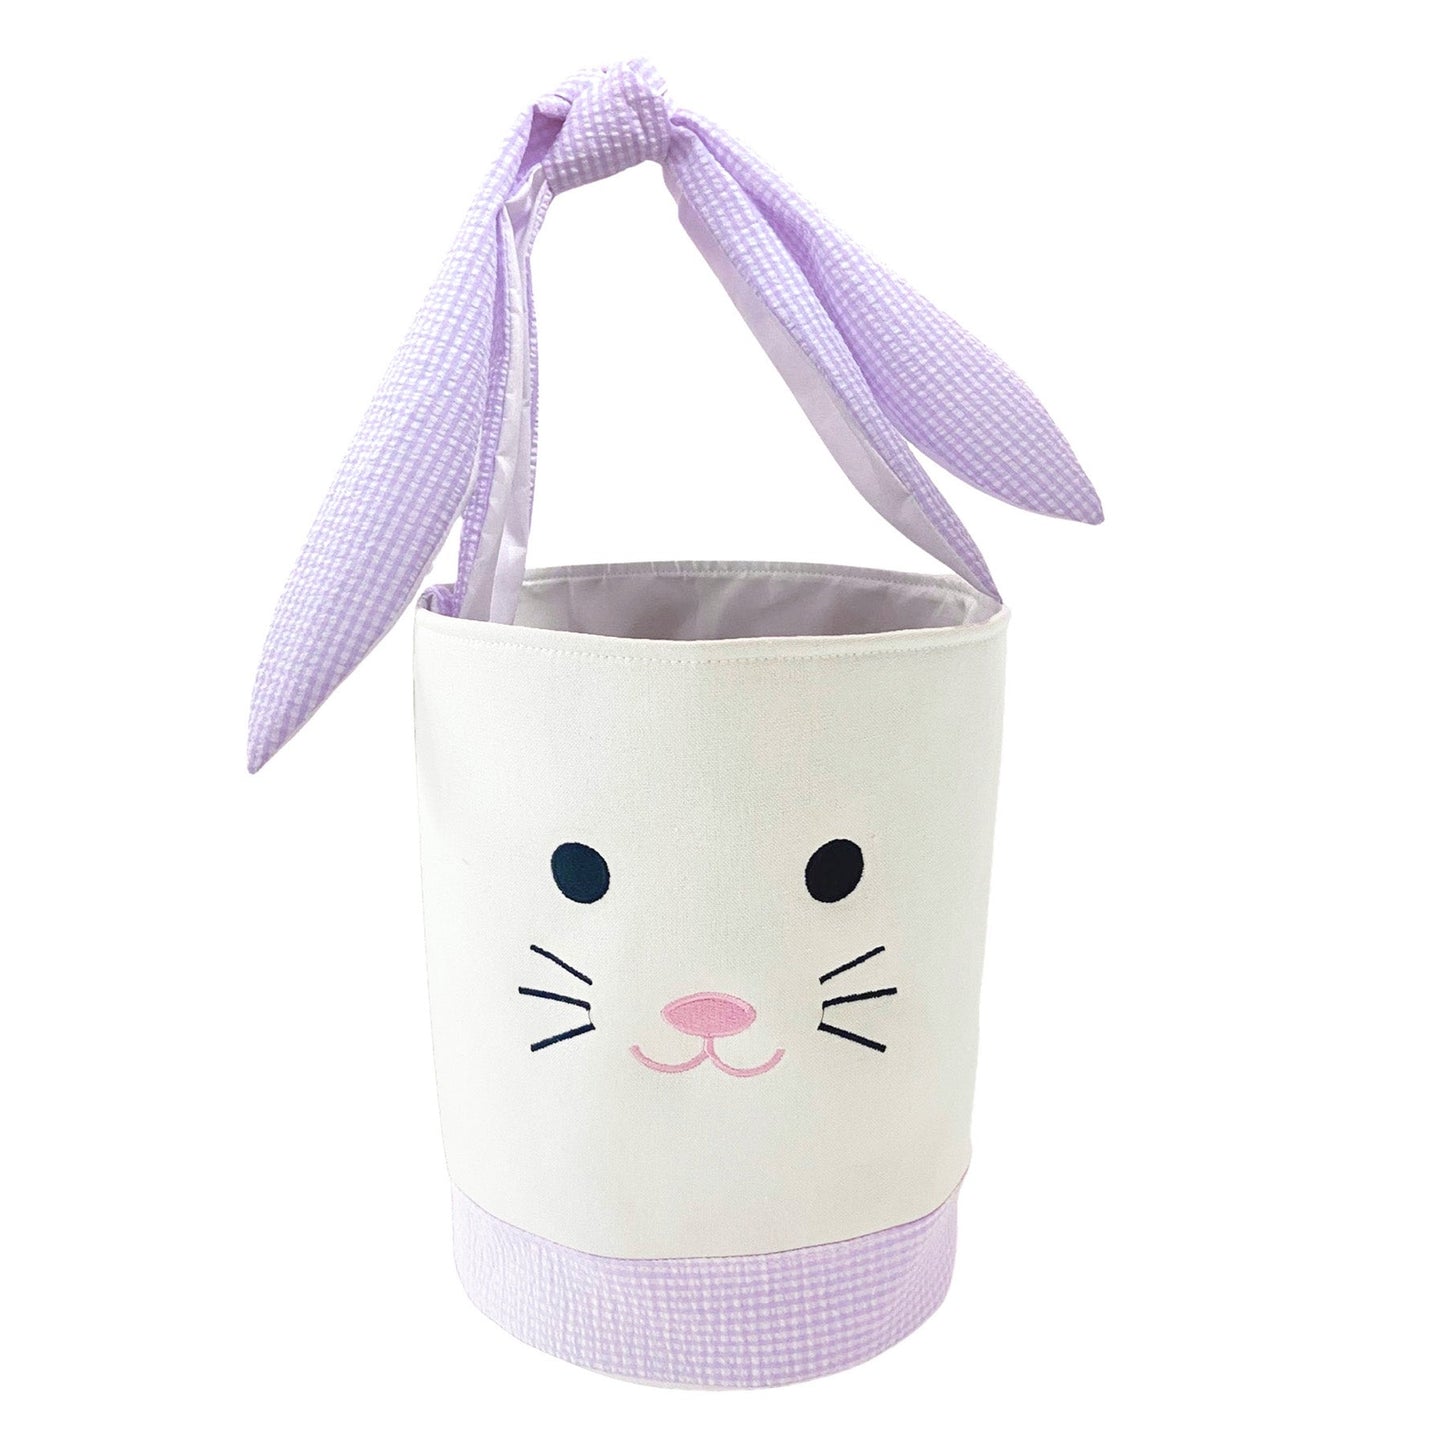 Bunny Easter Basket - Lavender